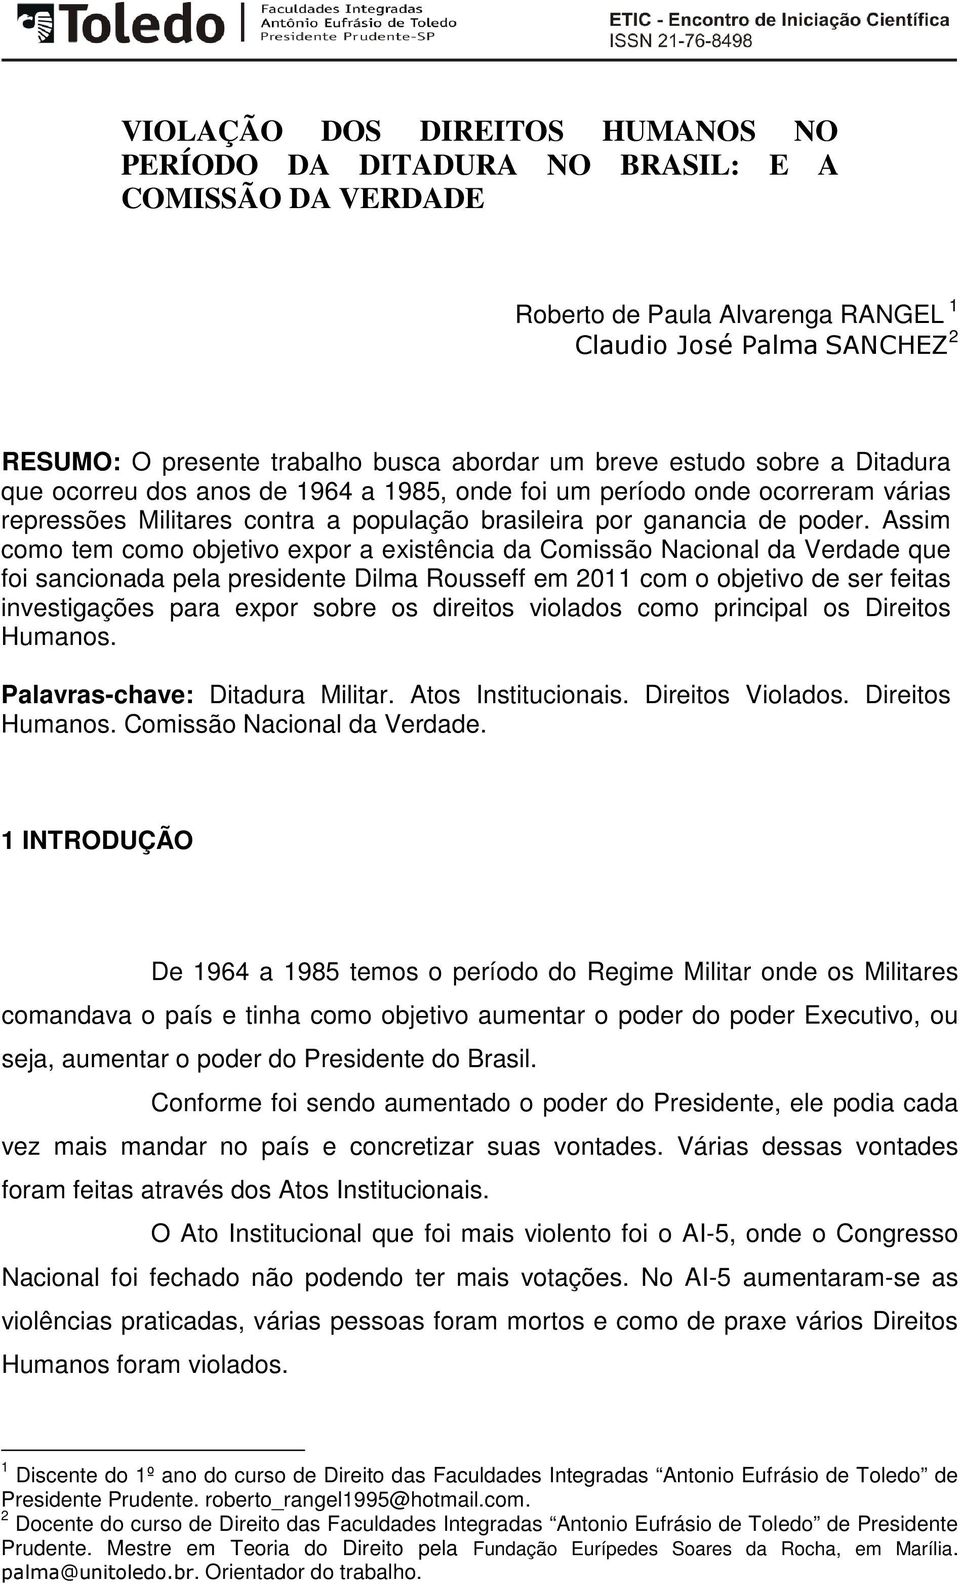 Assim como tem como objetivo expor a existência da Comissão Nacional da Verdade que foi sancionada pela presidente Dilma Rousseff em 2011 com o objetivo de ser feitas investigações para expor sobre